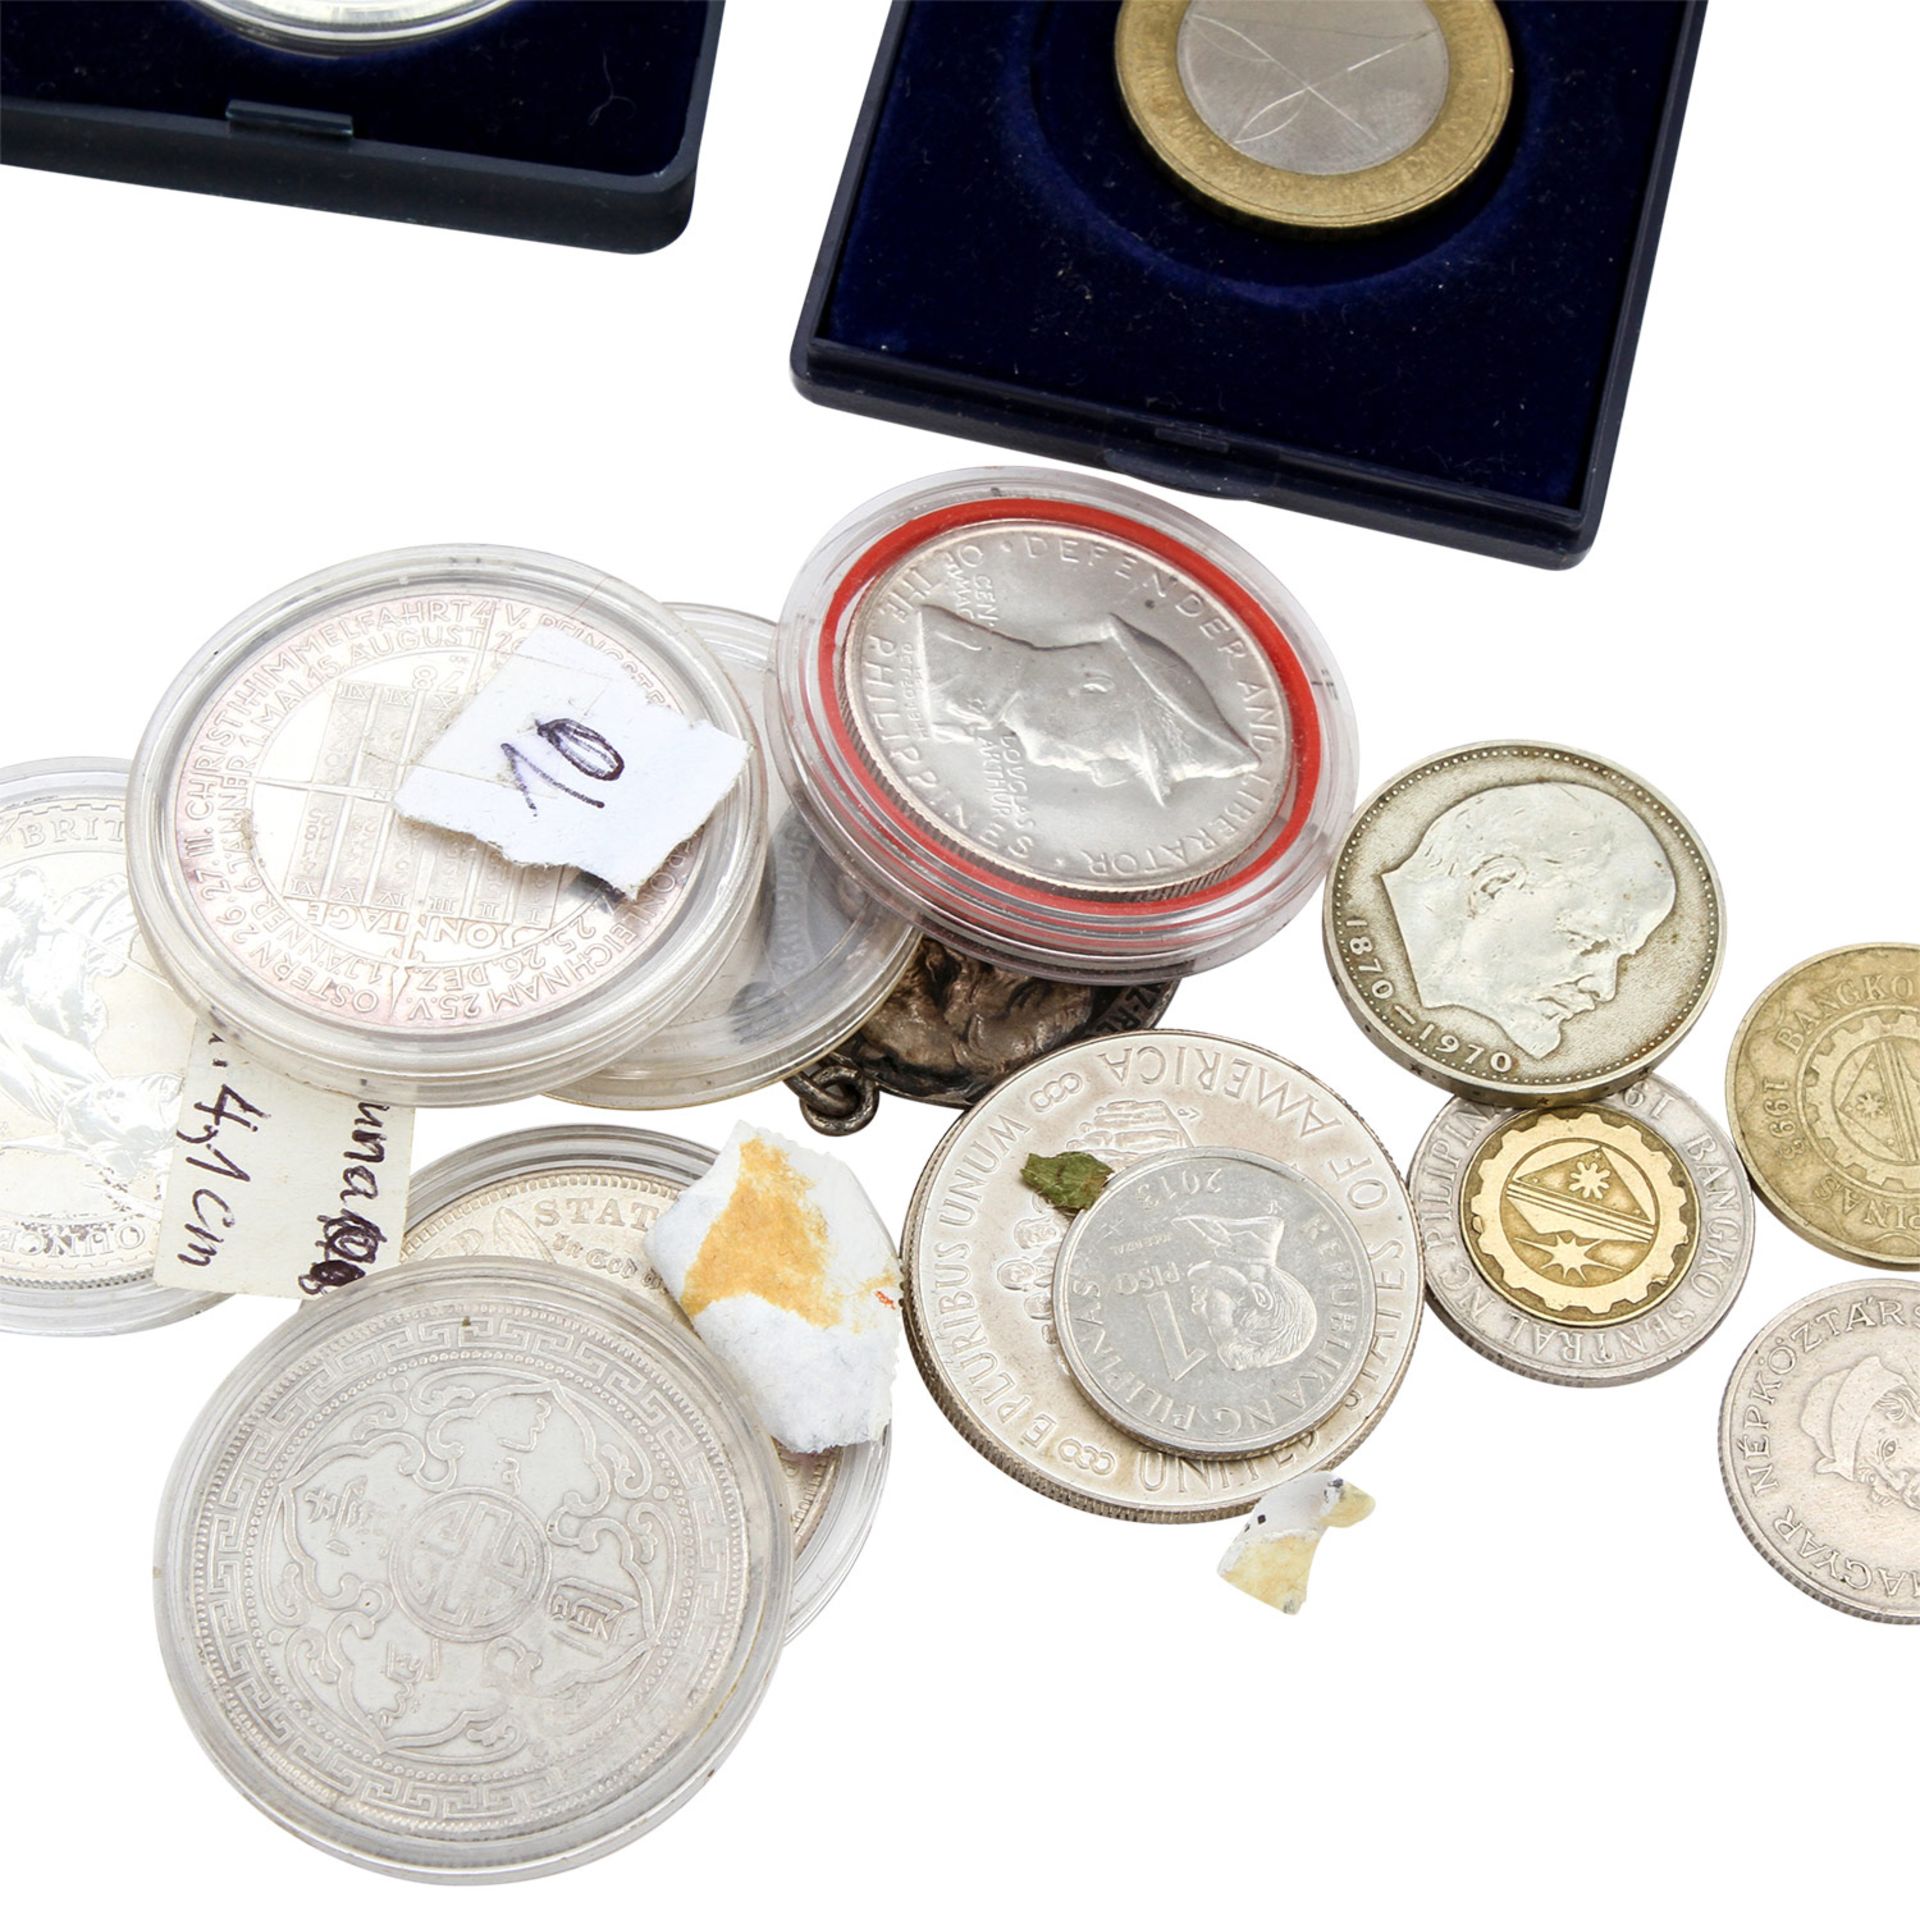 Konvolut - Diverse Silbermünzen, darunter auch einige Unzen, Medaillen, Kursgeld, Exoten. - Bild 4 aus 7